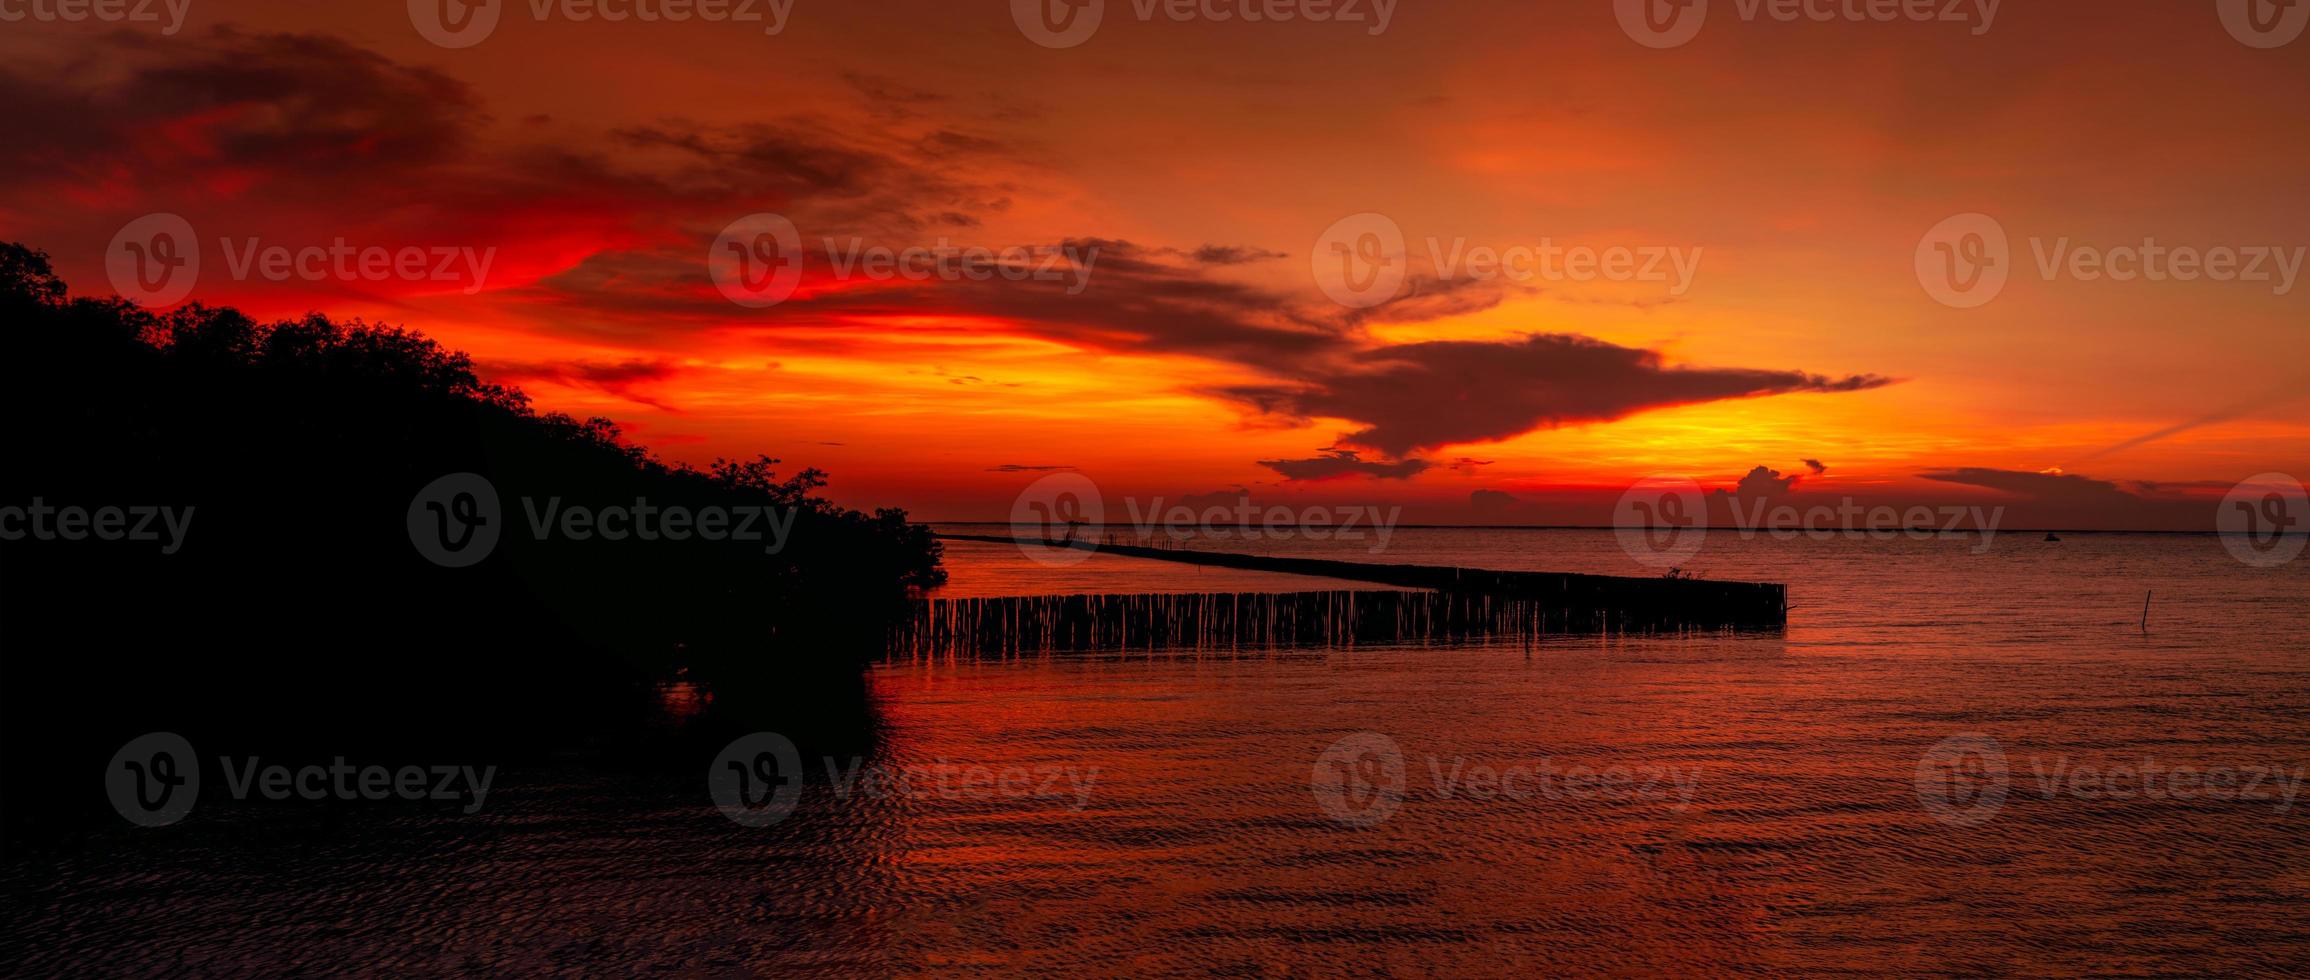 bellissimo cielo al tramonto rosso e arancione sul mare tropicale. cielo rosso al tramonto. orizzonte al mare. mare tropicale. vista panoramica del cielo al tramonto. oceano calmo. paesaggio marino. immagine artistica di strato di nuvole sul cielo al tramonto. foto